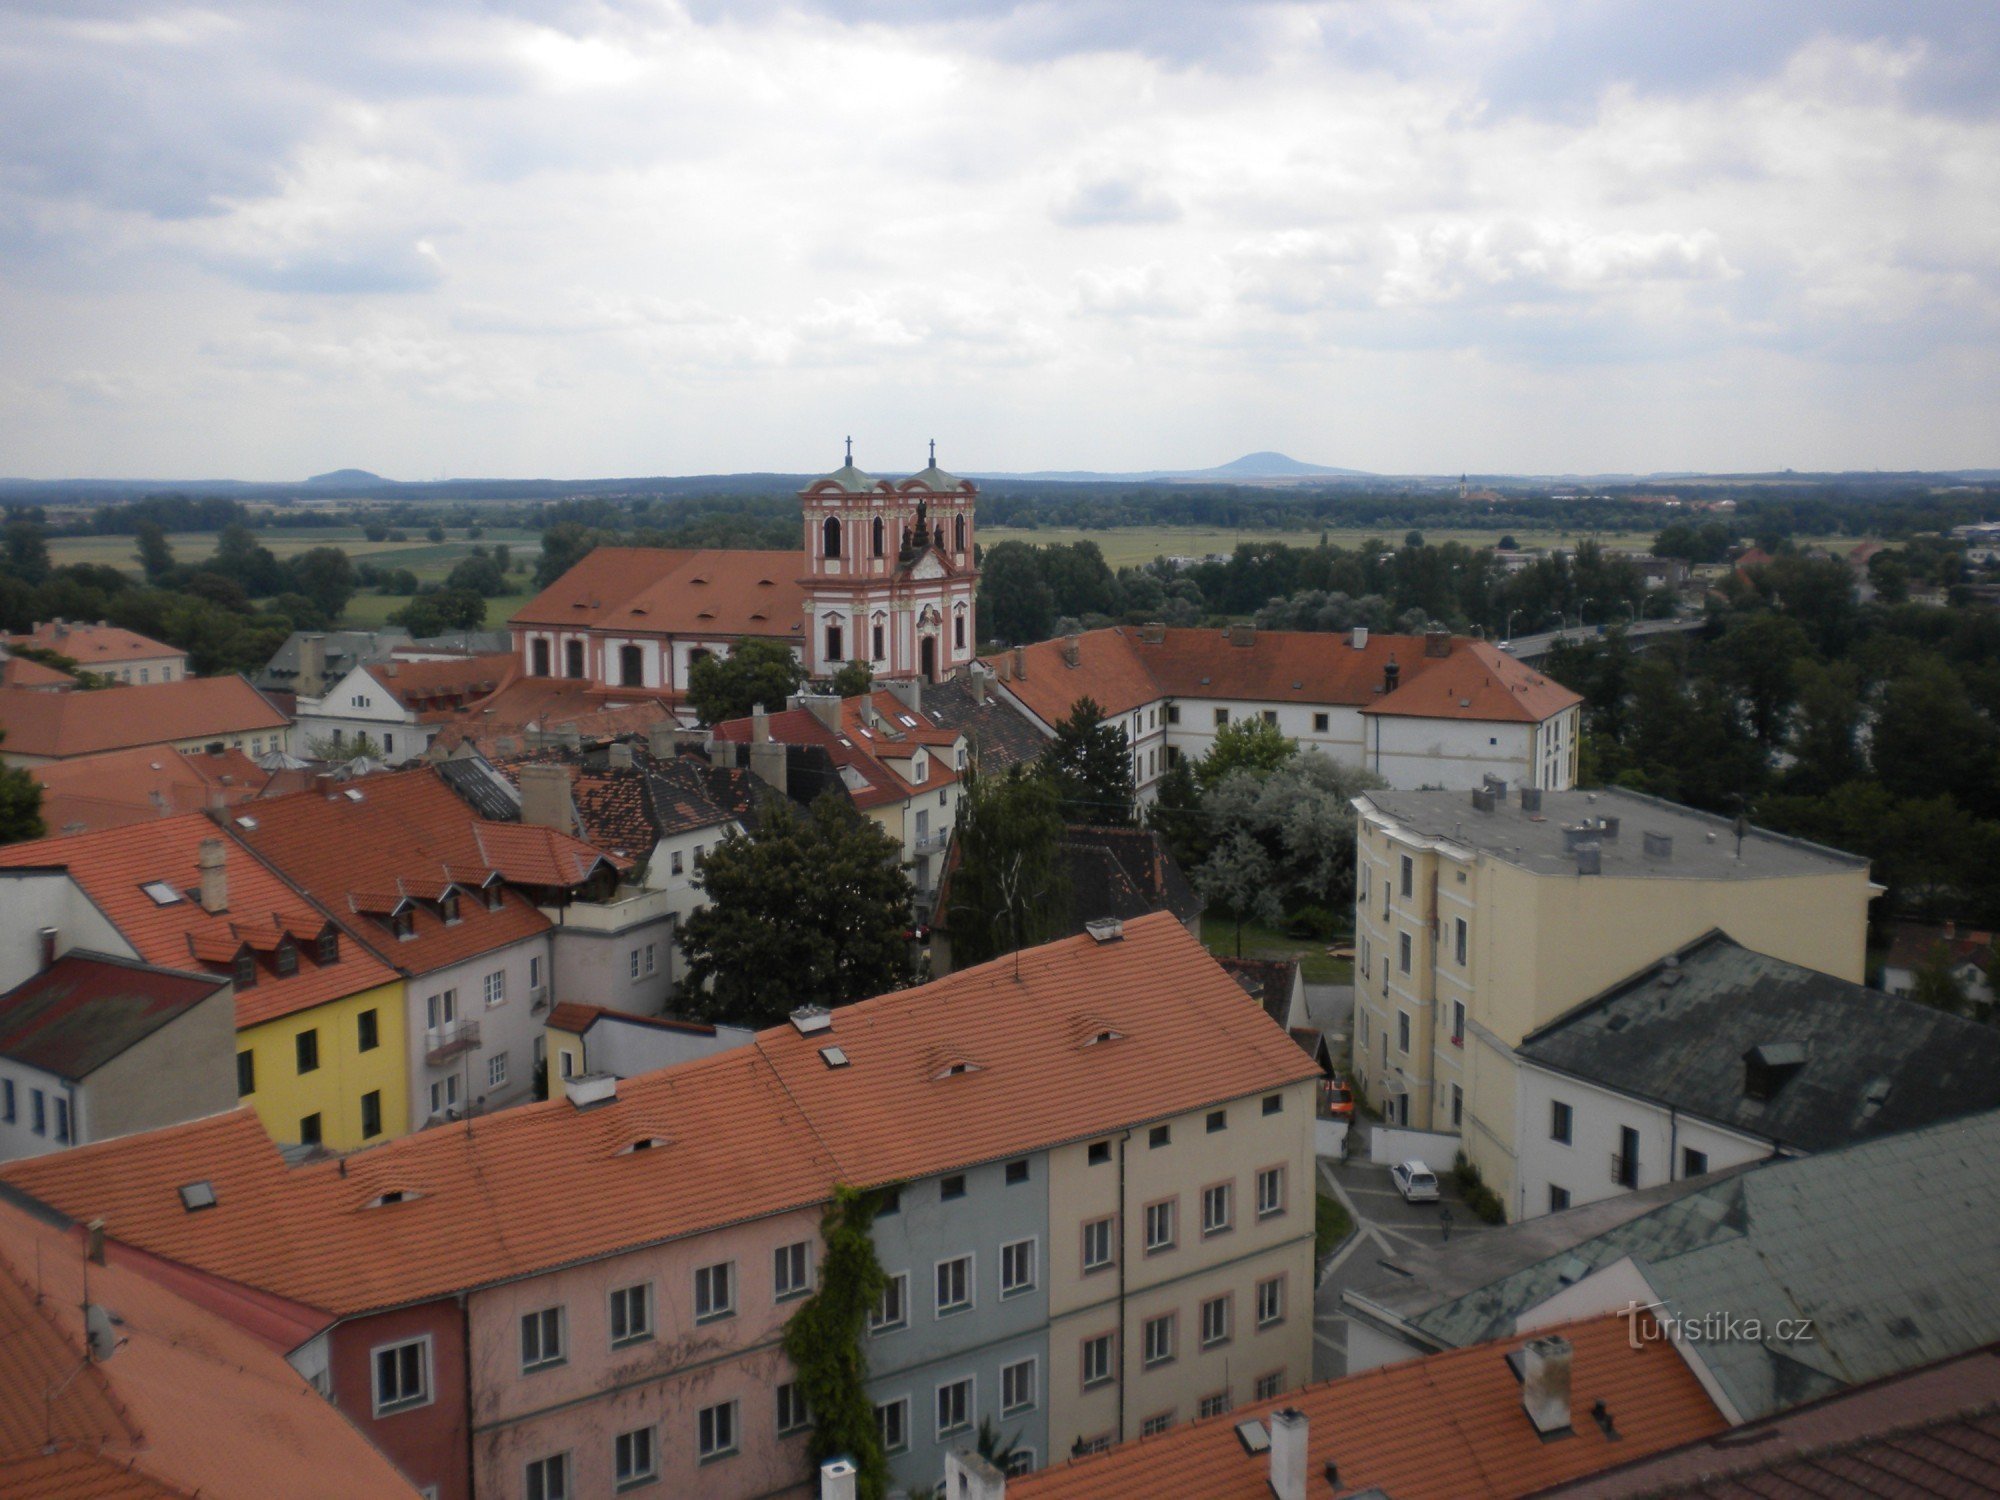 Edifici storici della città di Litoměřice.